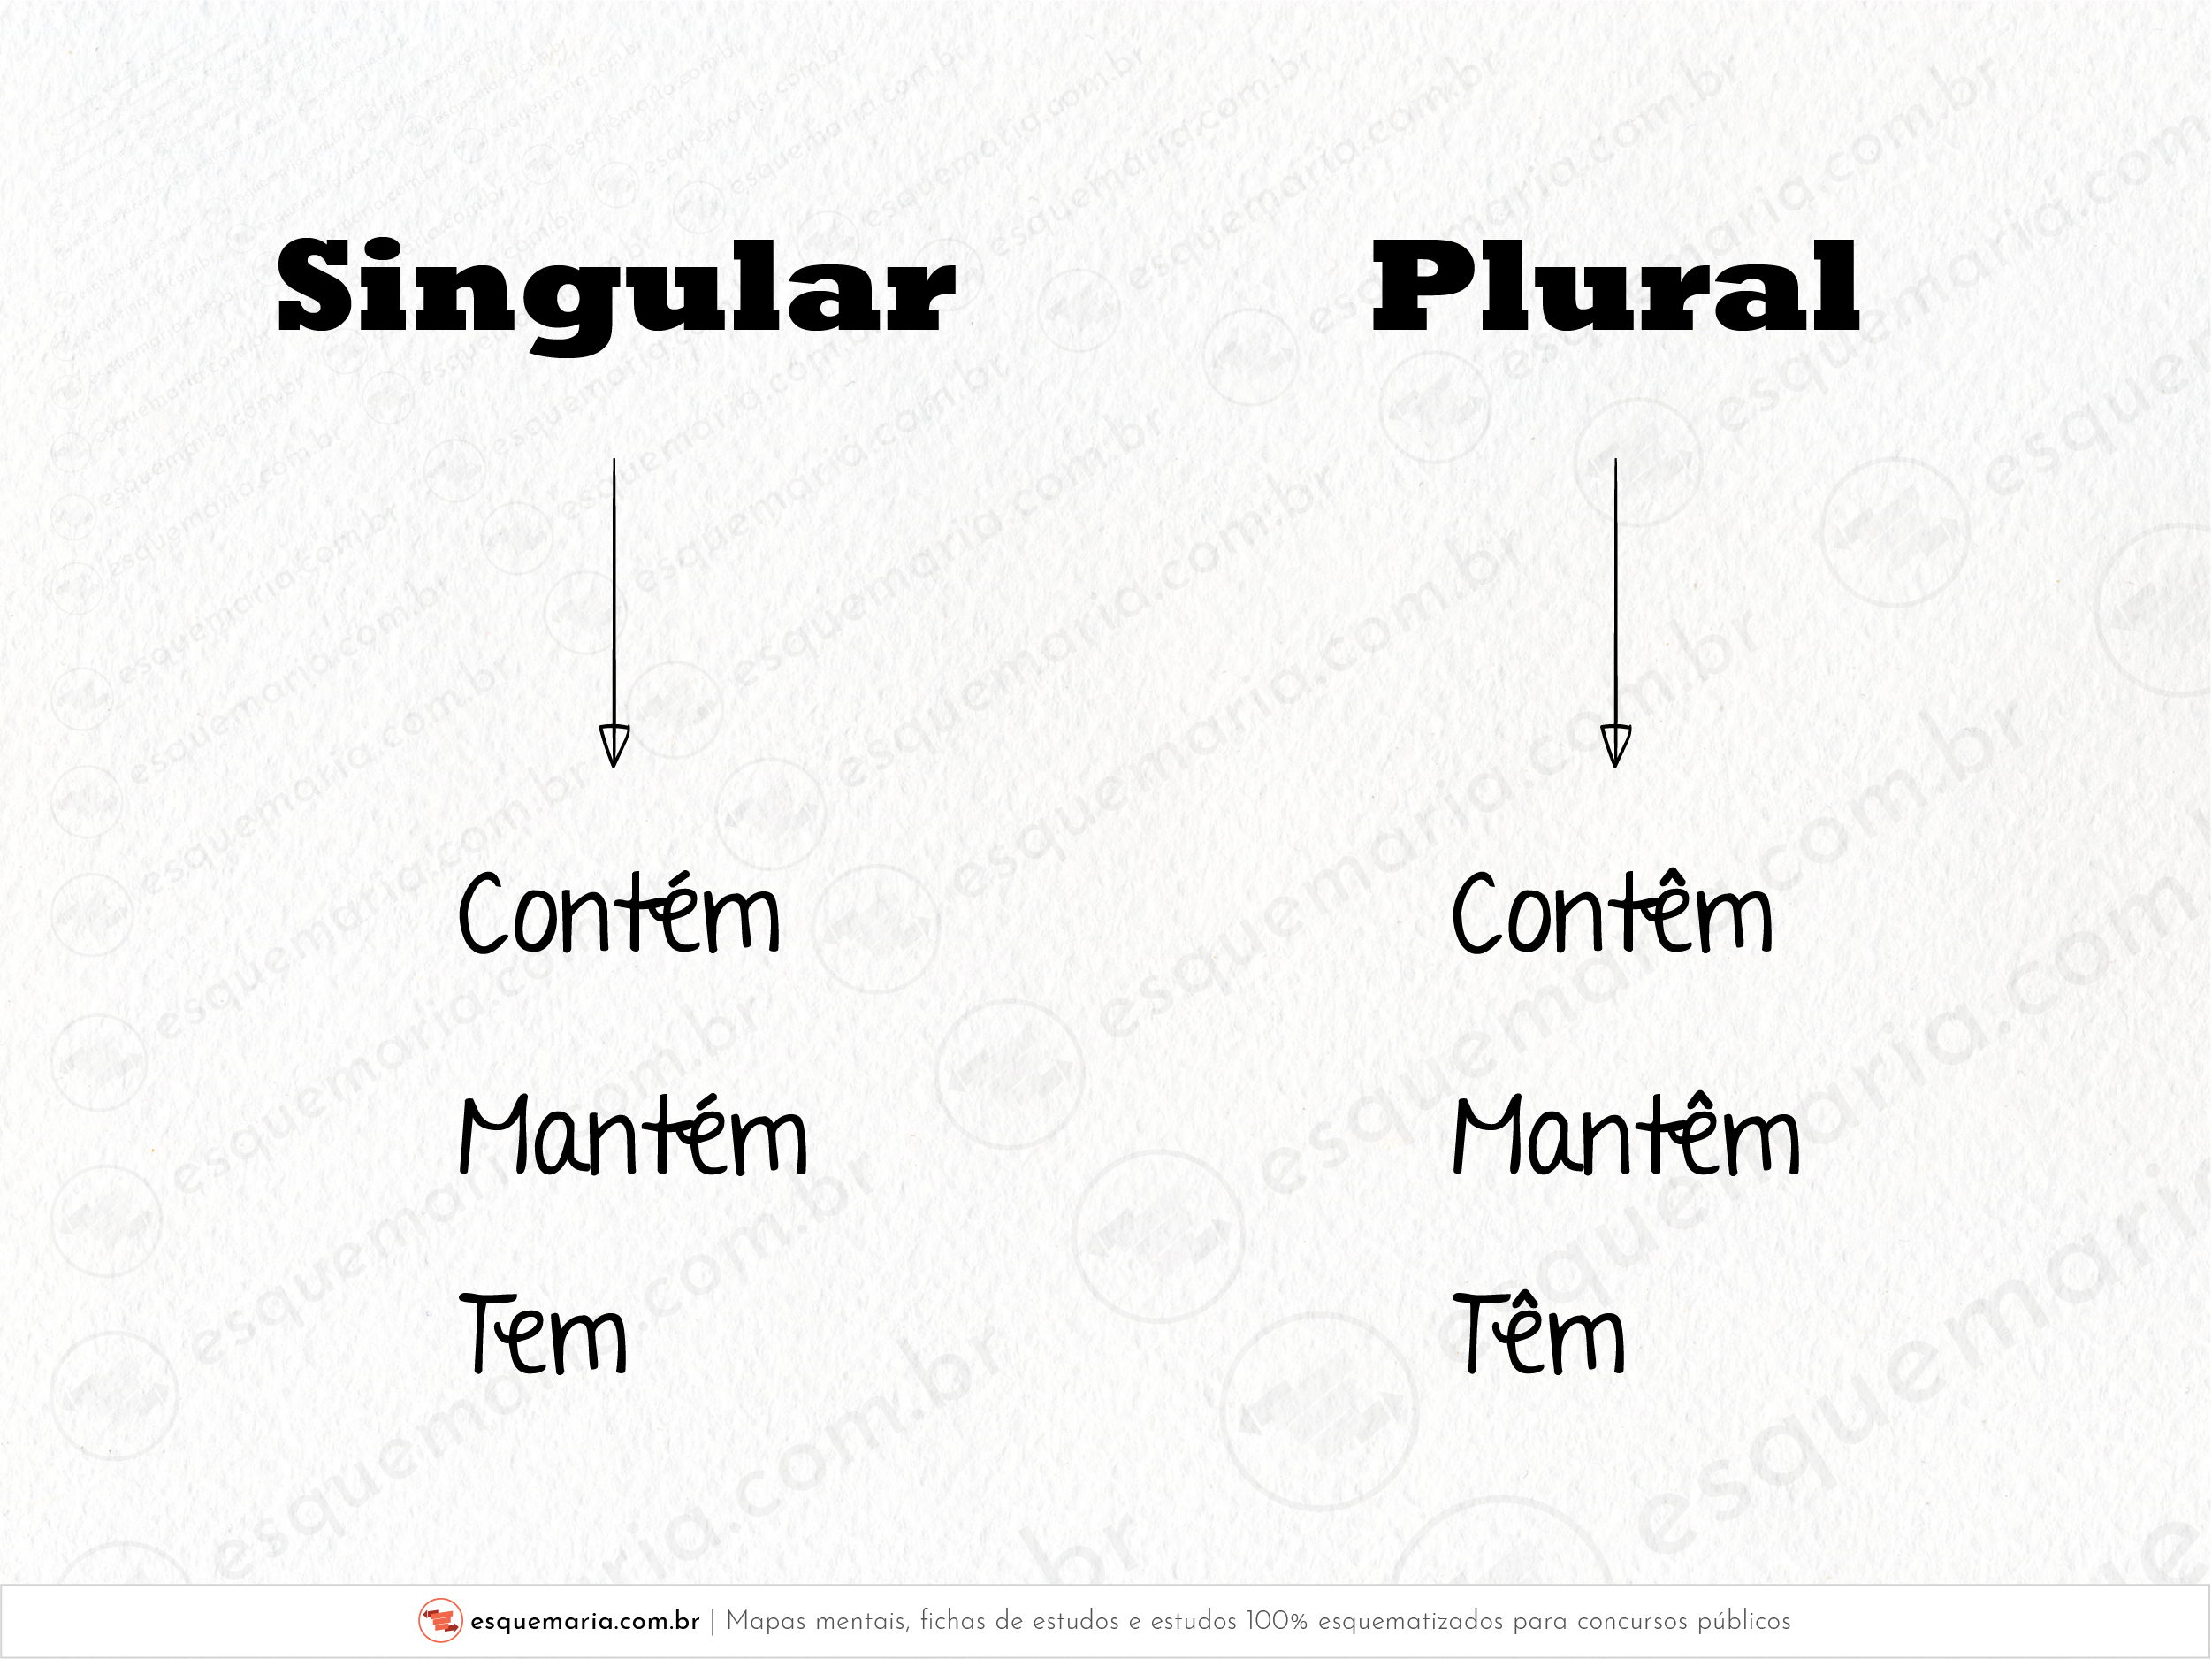 Singular e plural tem mantém contém-01